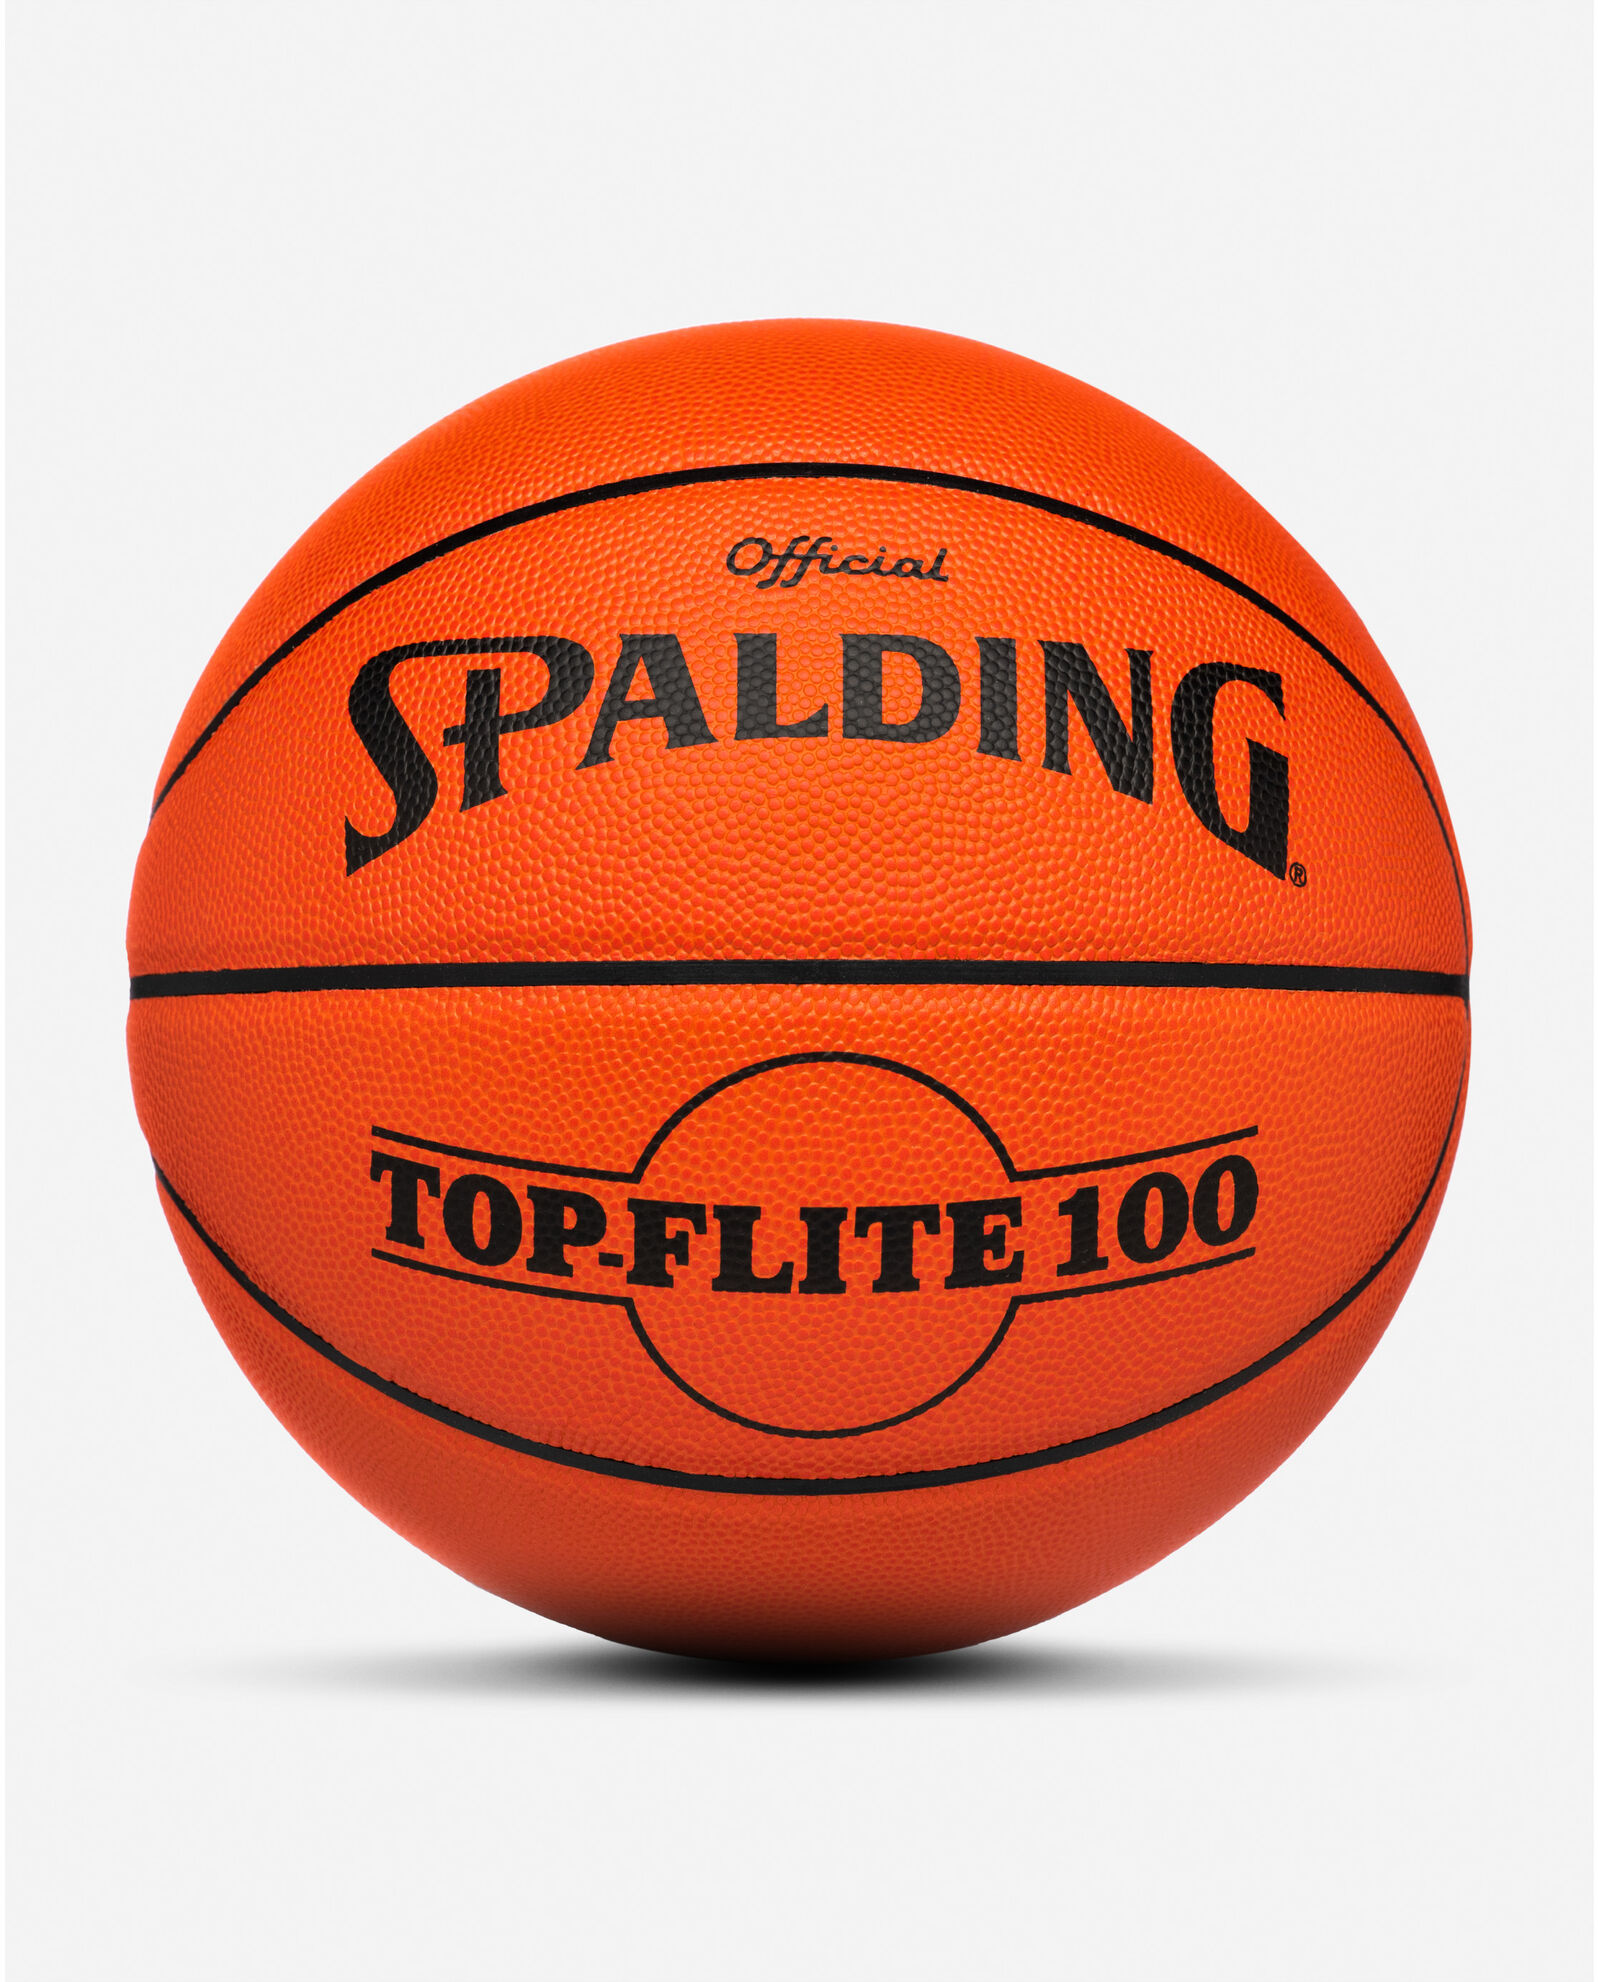 vidnesbyrd at ringe skjule Spalding x Stranger Things Top-Flite 100 Indoor Game Basketball - 29.5" l  Spalding.com